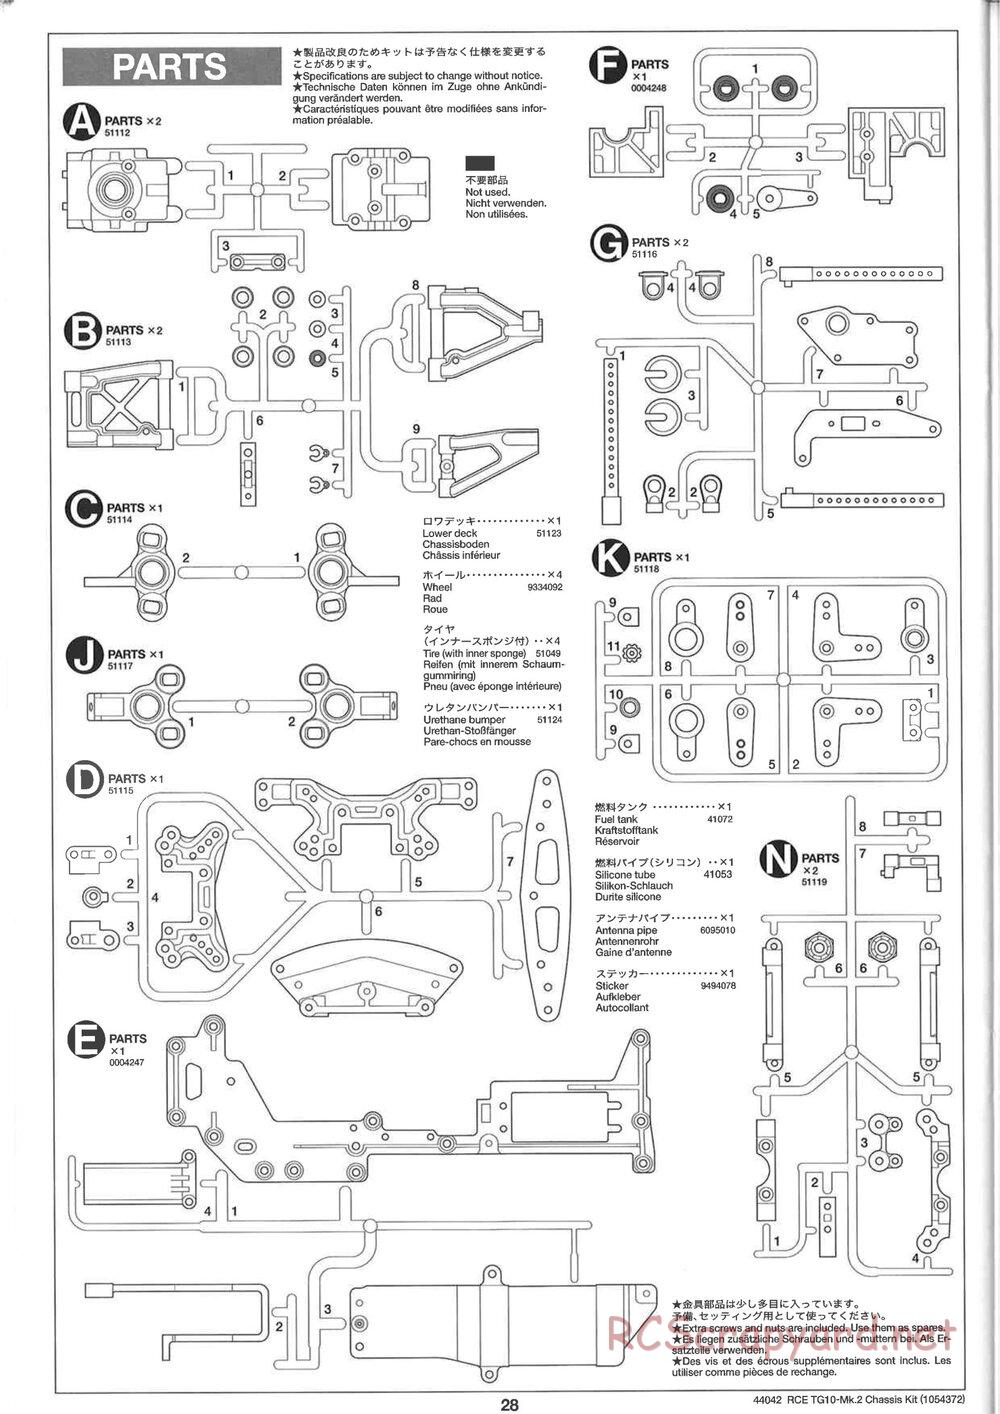 Tamiya - TG10 Mk.2 Chassis - Manual - Page 28